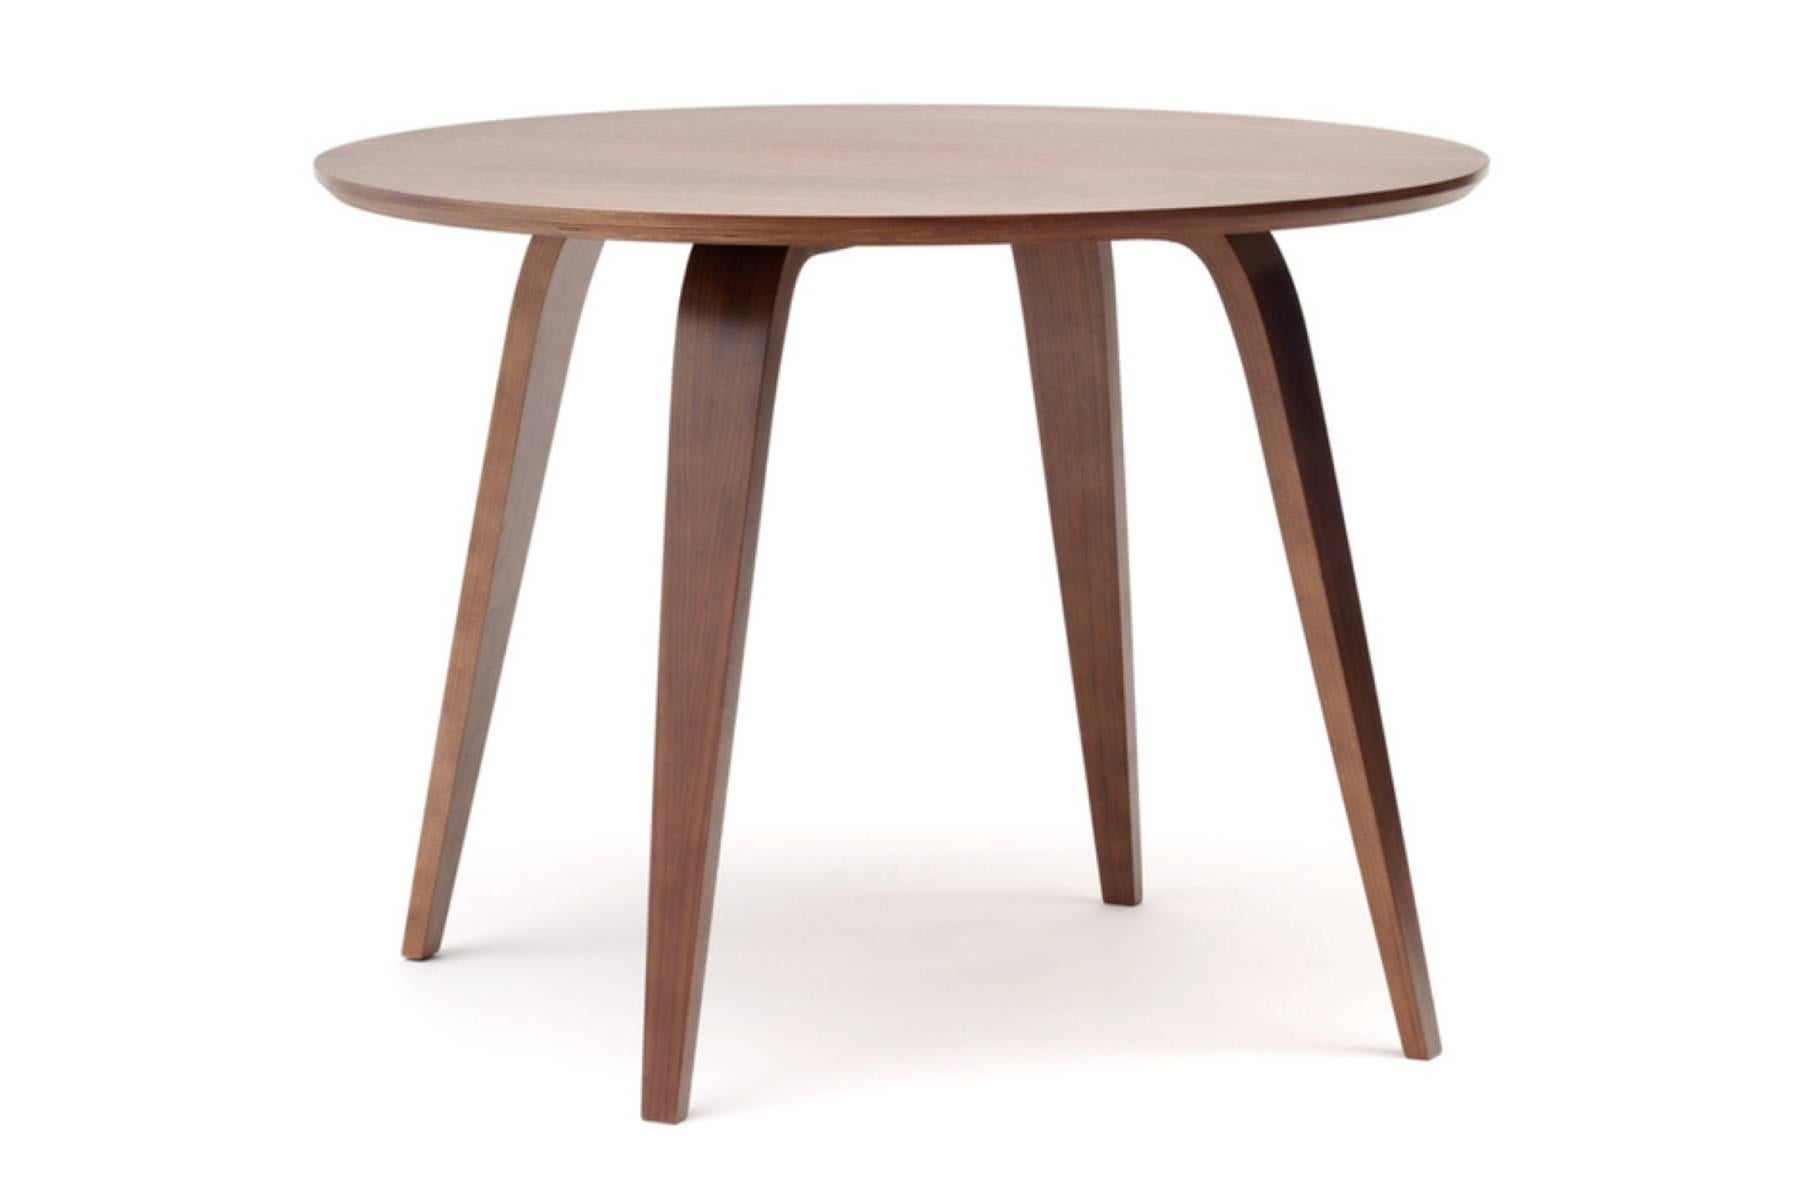 Die 2003 eingeführten Cherner-Tische wurden von Benjamin Cherner entworfen, um die Cherner-Sitzmöbel zu ergänzen. Die Tische eignen sich perfekt für formelle und informelle Anlässe und sind stabil und leicht. Cherner-Tische sind in ovaler, runder